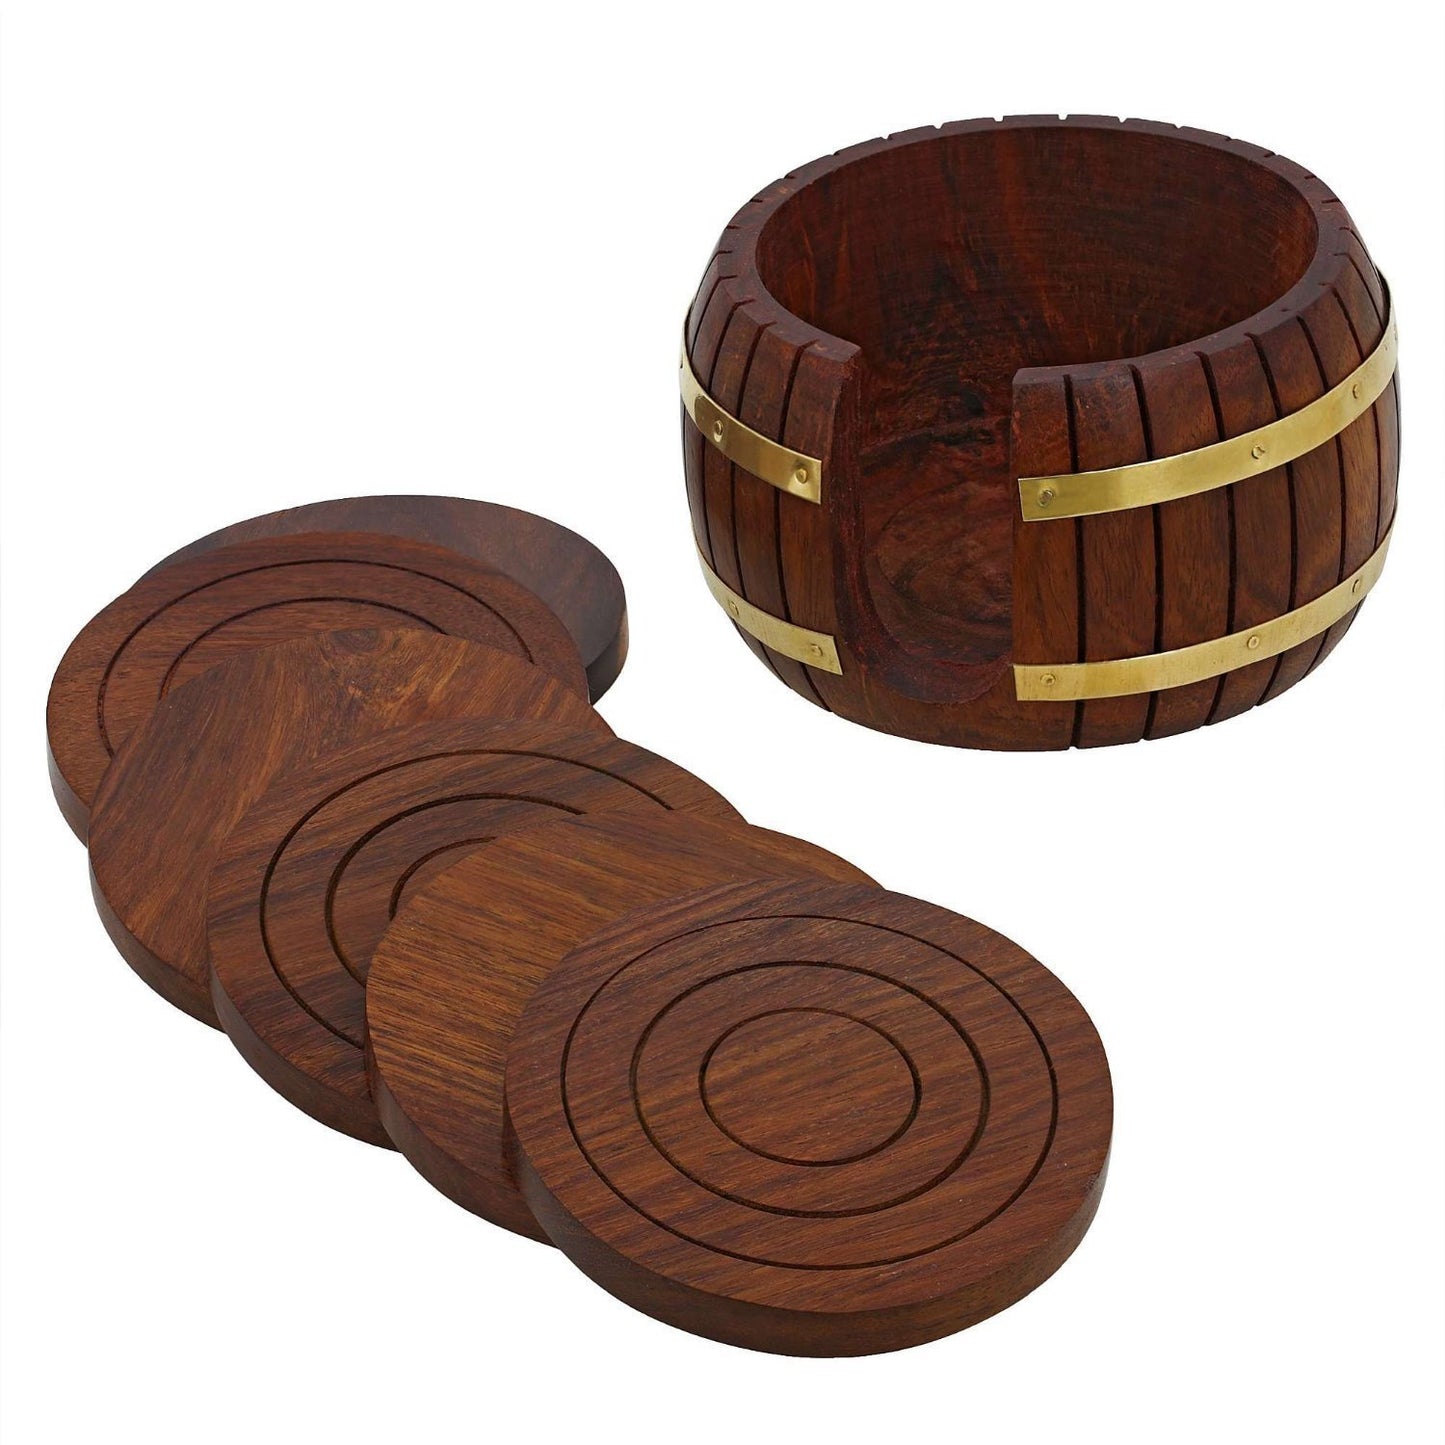 Handcrafted Wooden Crane Coaster Set of 6 - Sheesham Wood, Round Shape, Beautiful Coaster